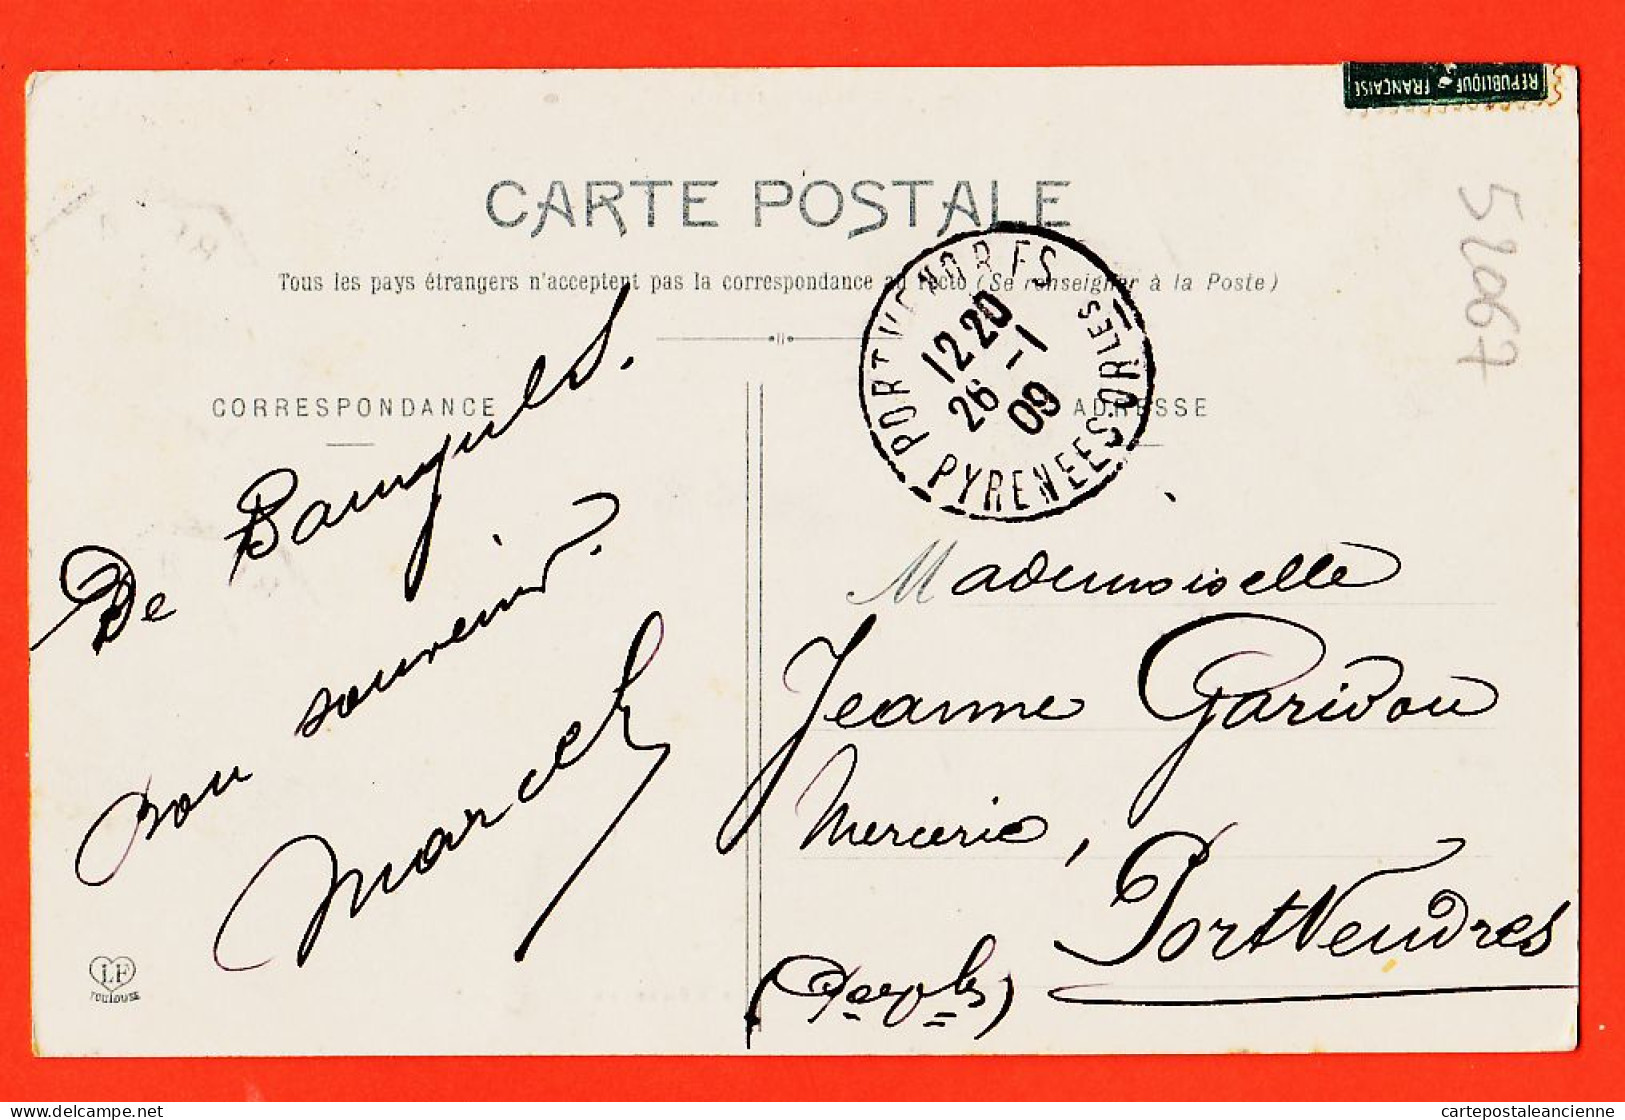 10393 ● BANYULS-sur-MER (66) Vue Générale 1909 à Jeanne GARIDOU Mercerie Port-Vendres / LABOUCHE 46 LE ROUSSILLON - Banyuls Sur Mer